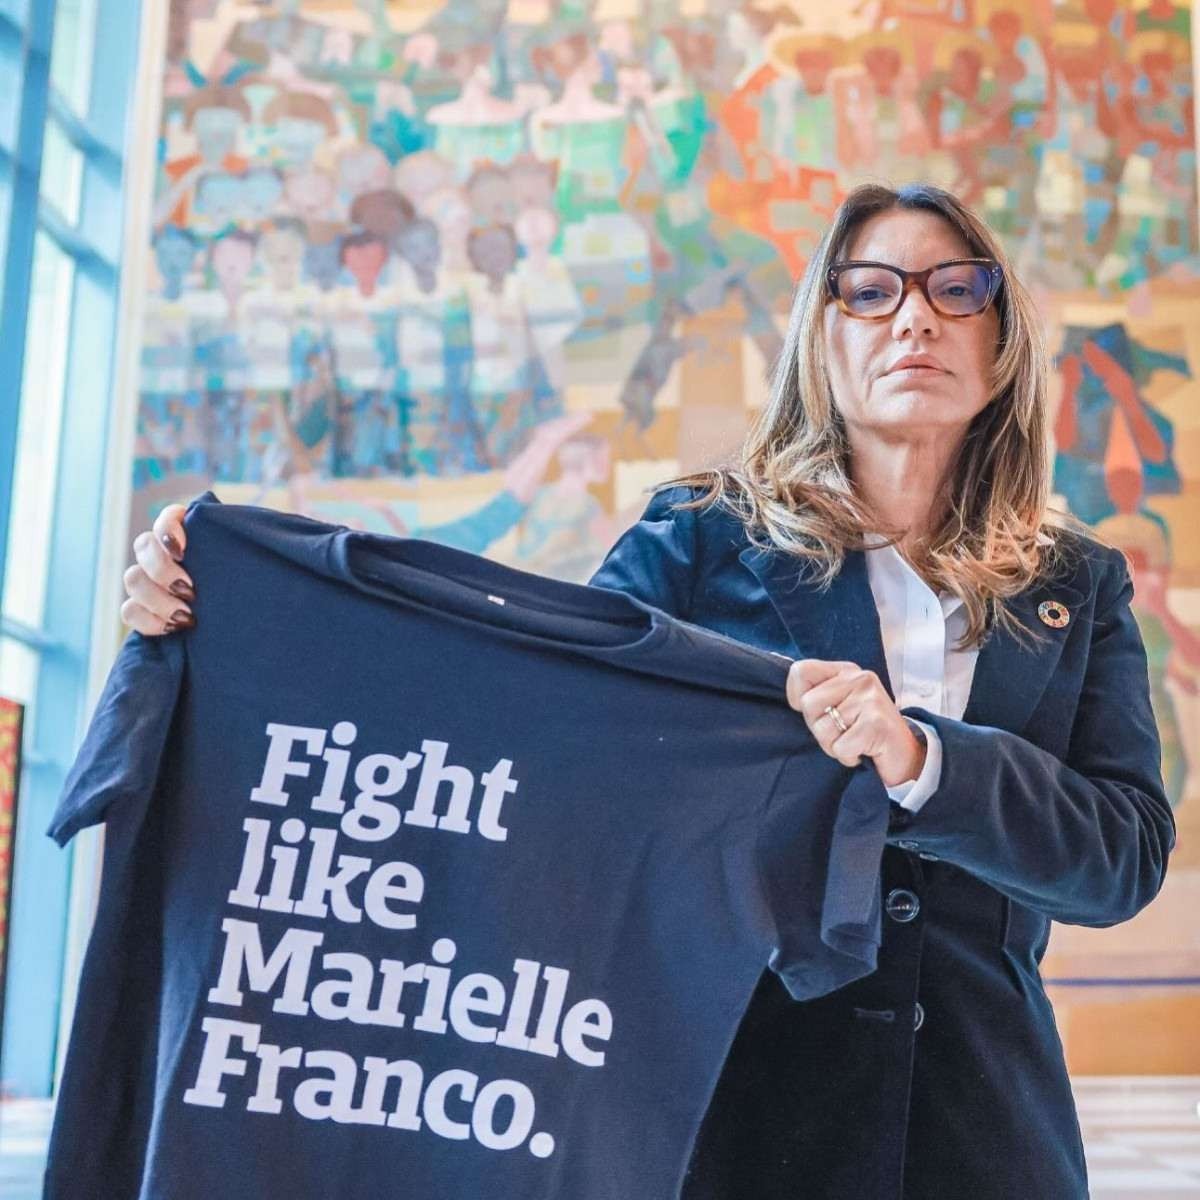 Janja sobre Marielle Franco: ‘Seguimos honrando seu legado’